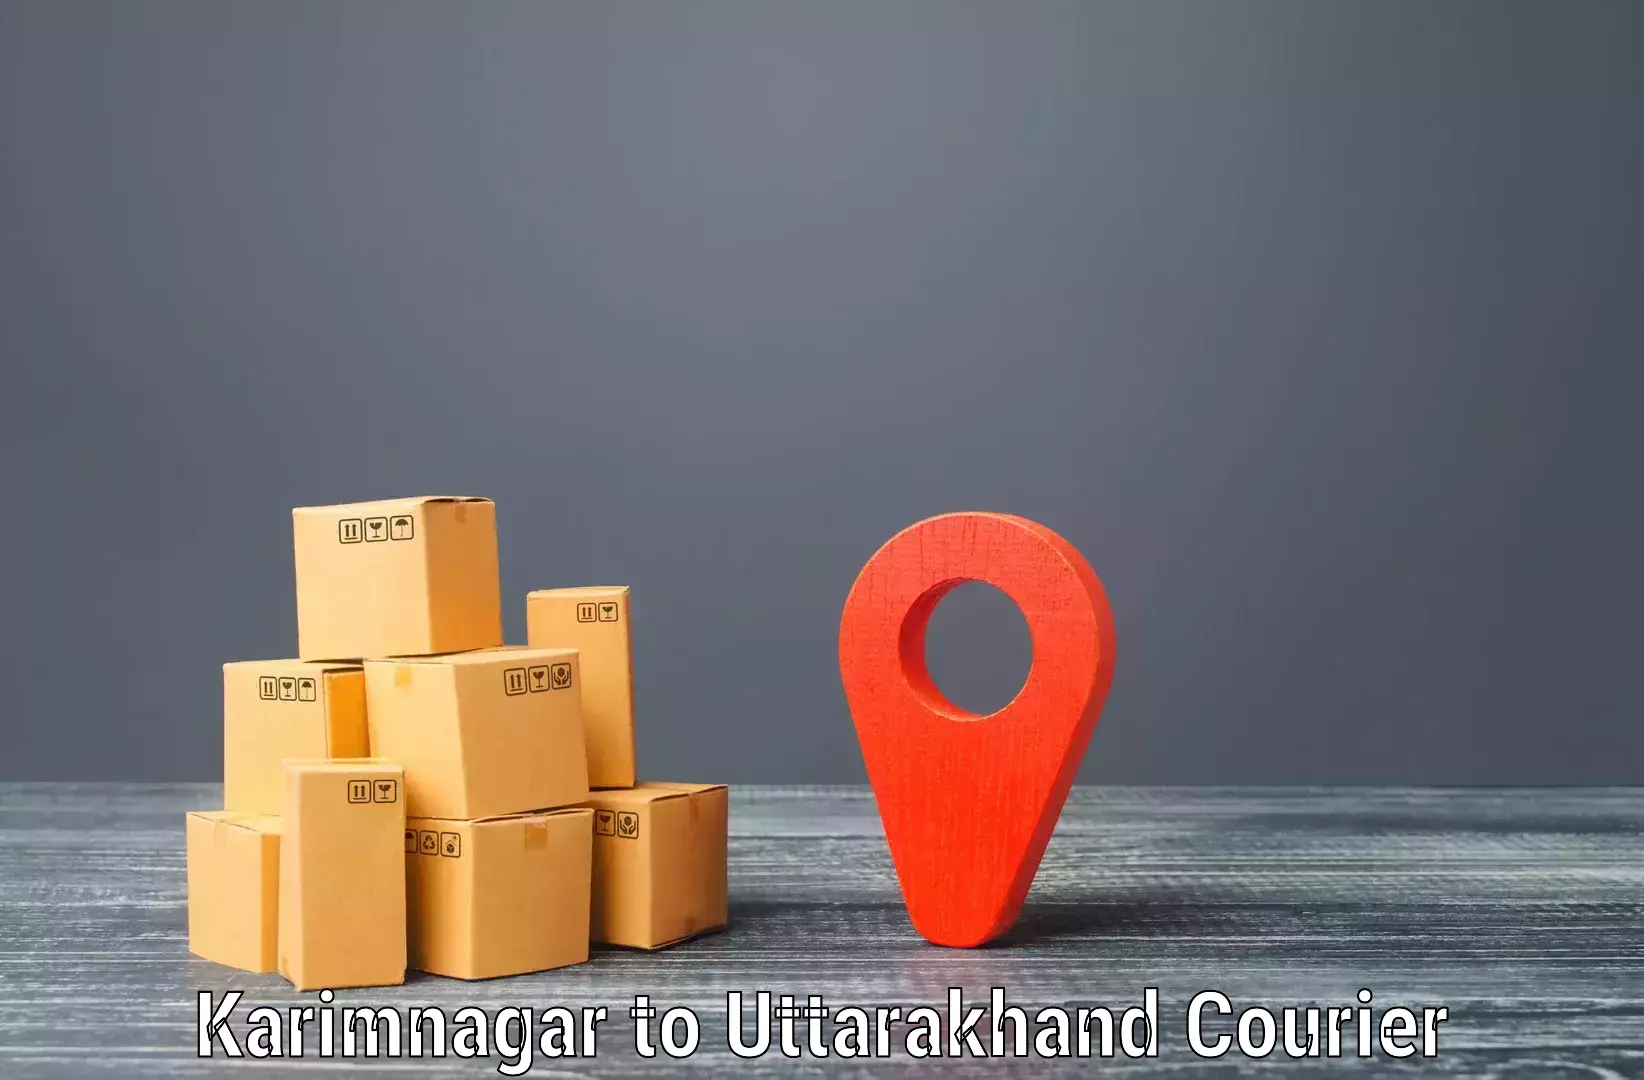 Urban courier service Karimnagar to Almora